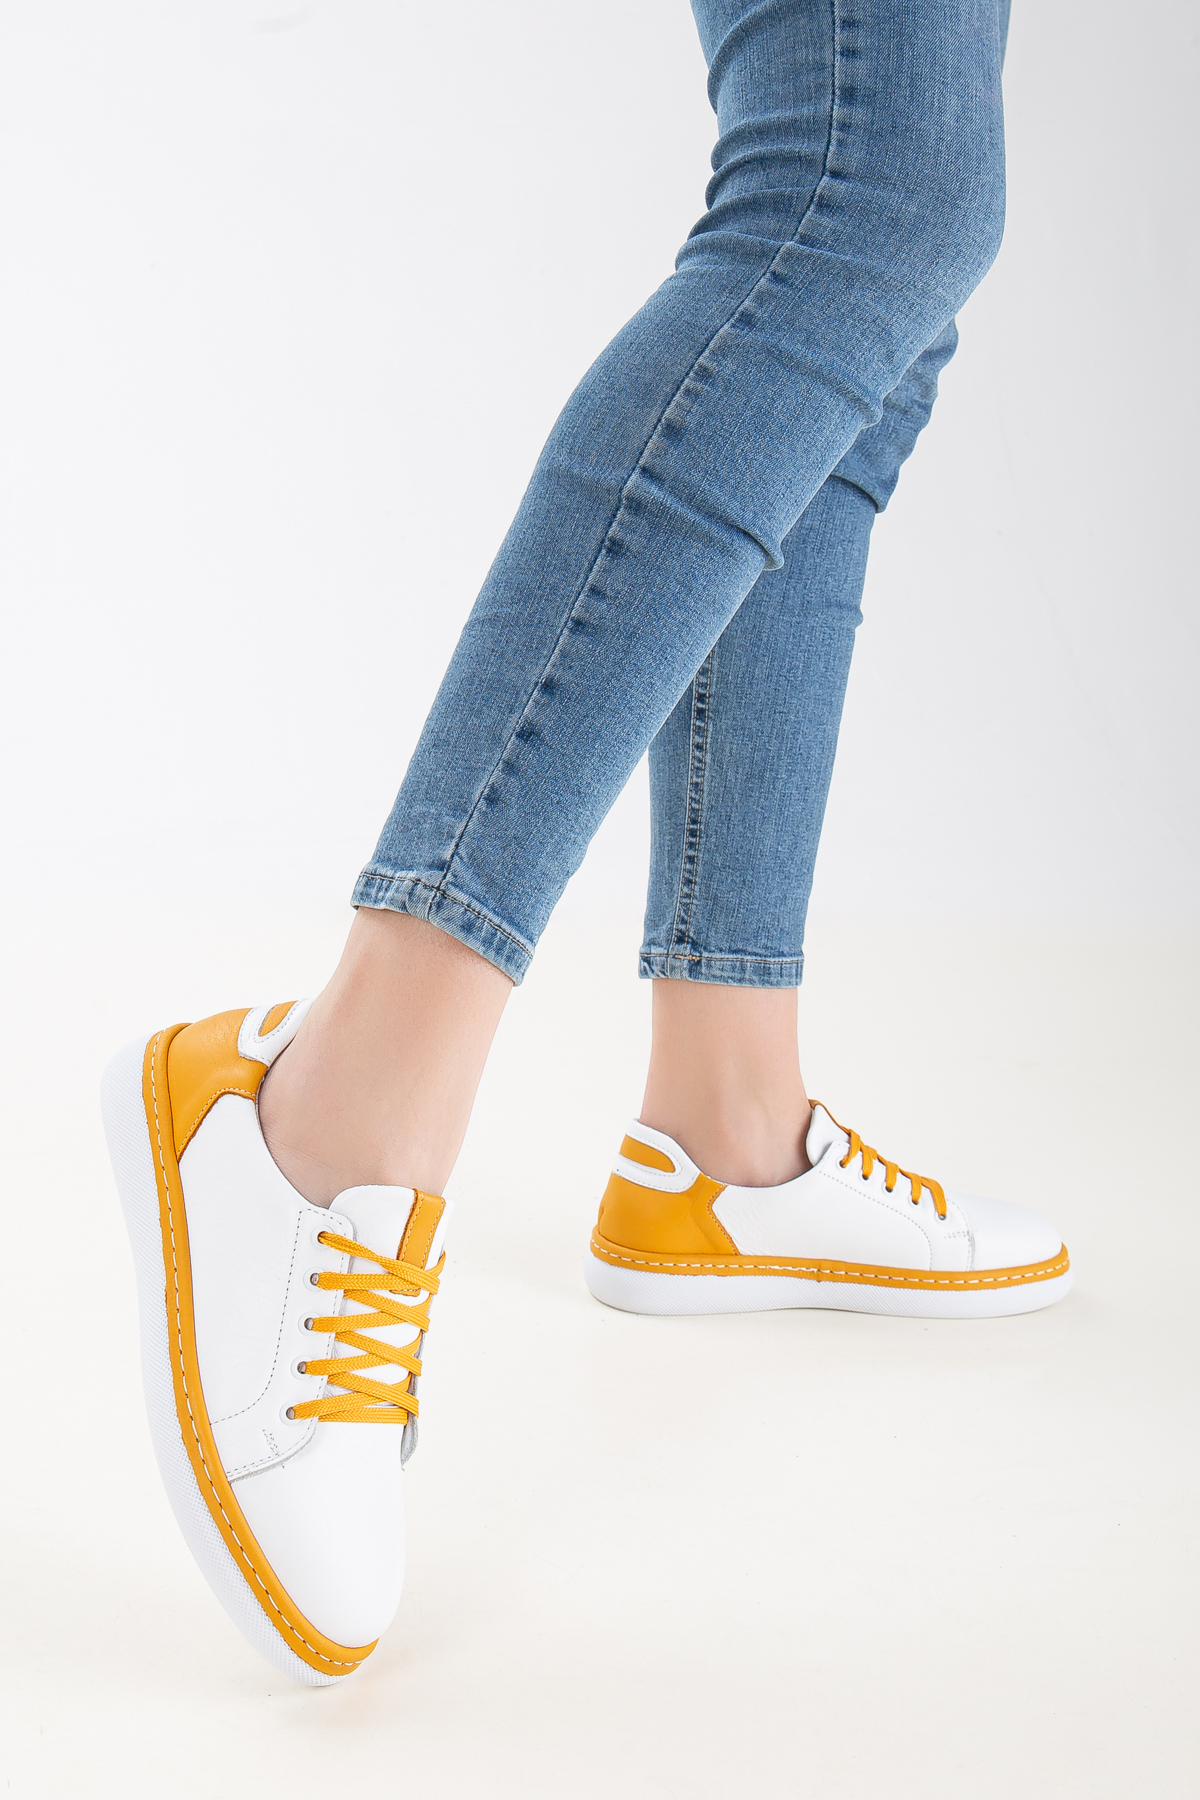 Kadın Sneakers Sarı Hakiki Deri Spor Ayakkabı